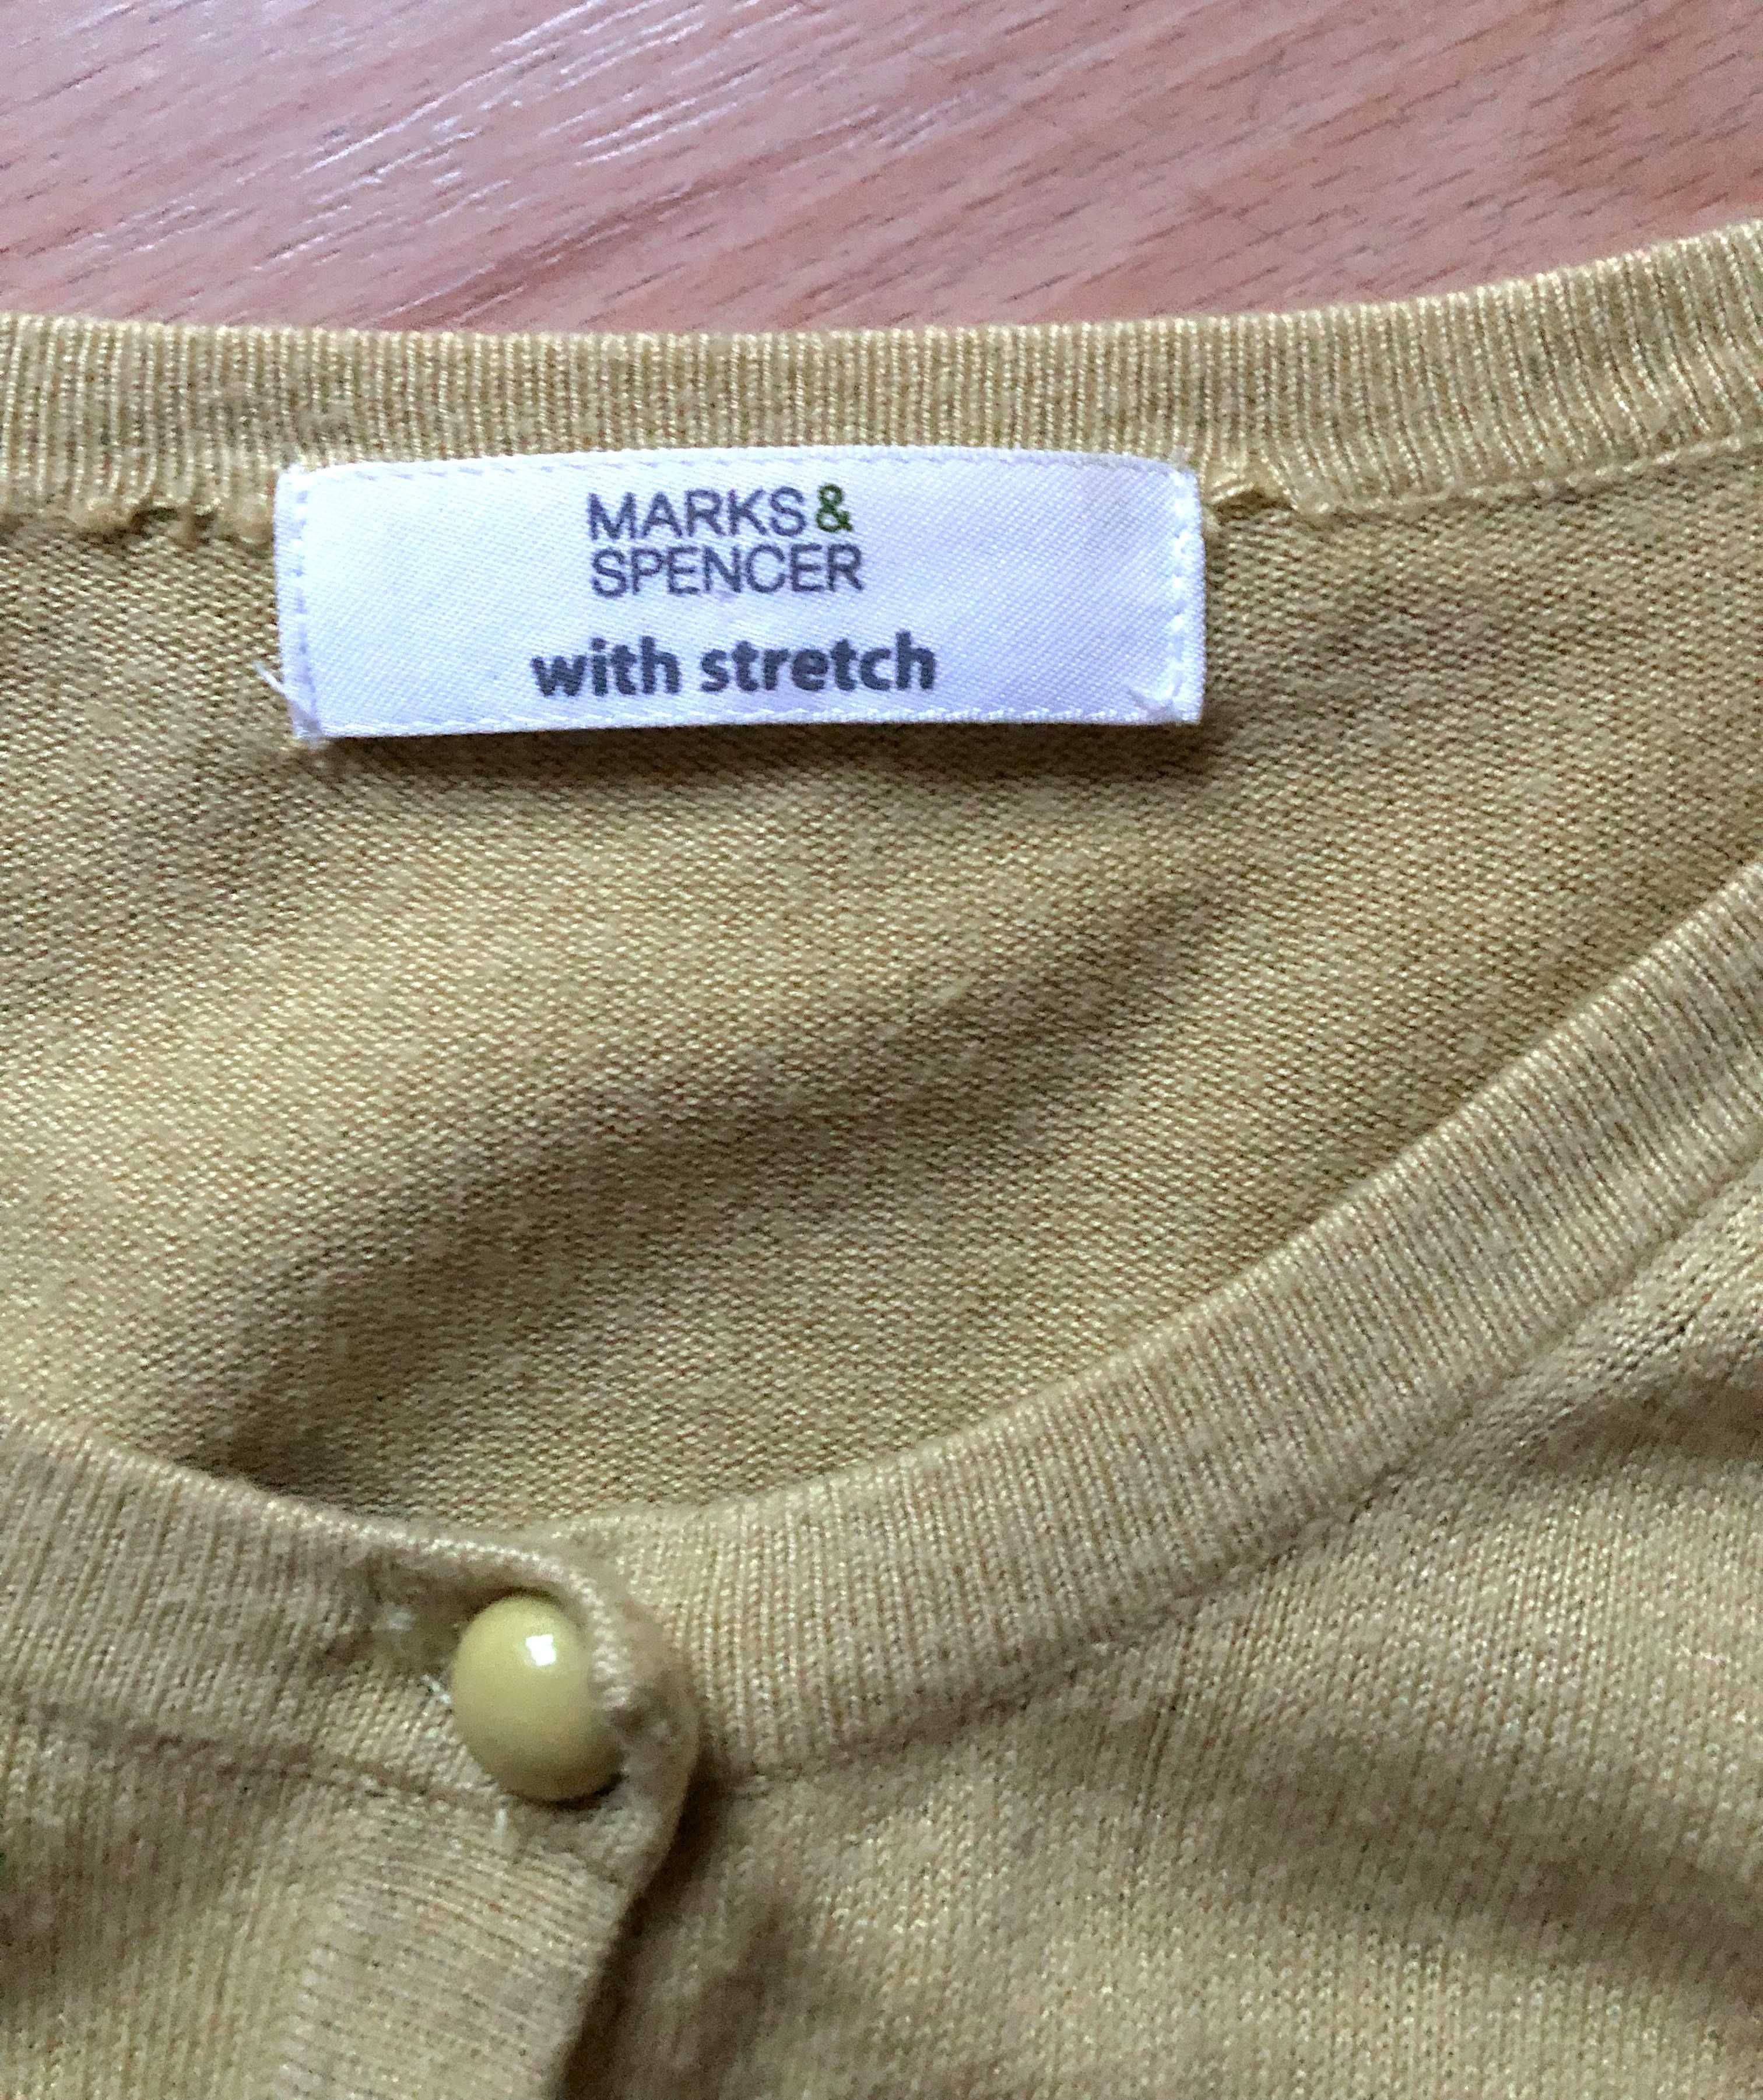 Kardigan na guziki, sweterek w kolorze limonkowym, Marks&Spencer.